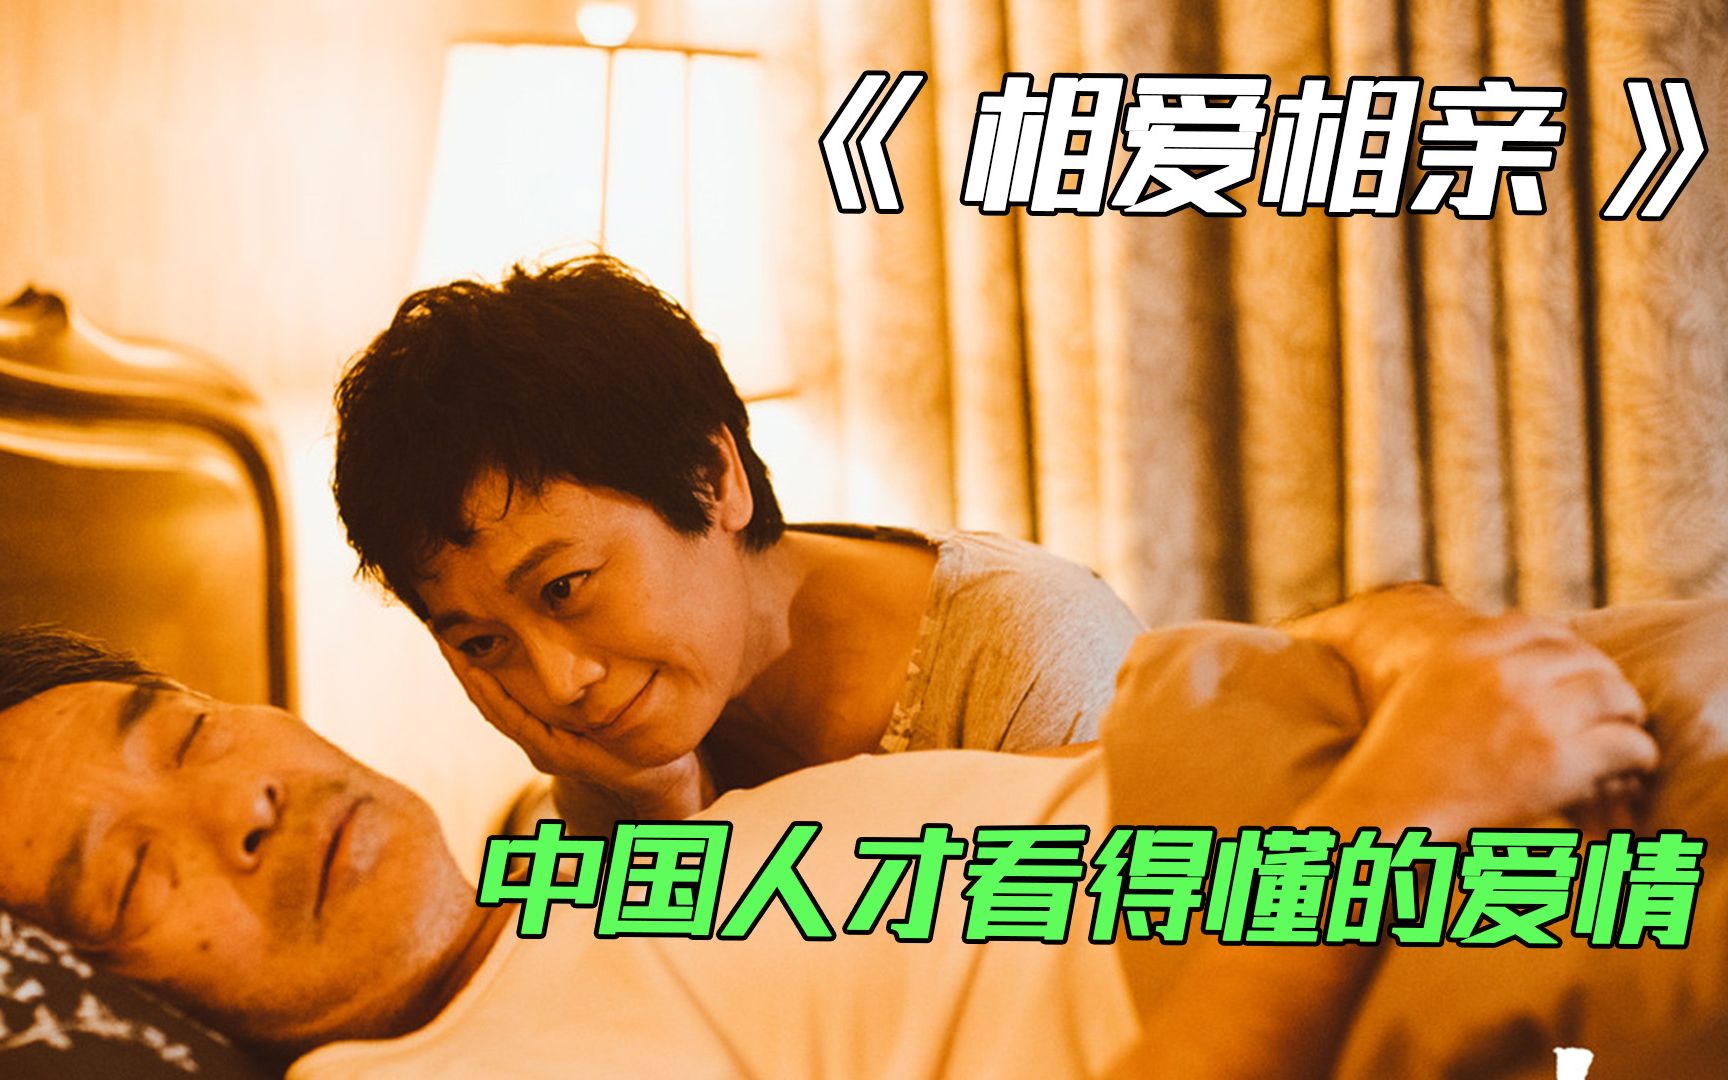 中国人才看得懂的爱情，张艾嘉自导自演的情感大片《相爱相亲》